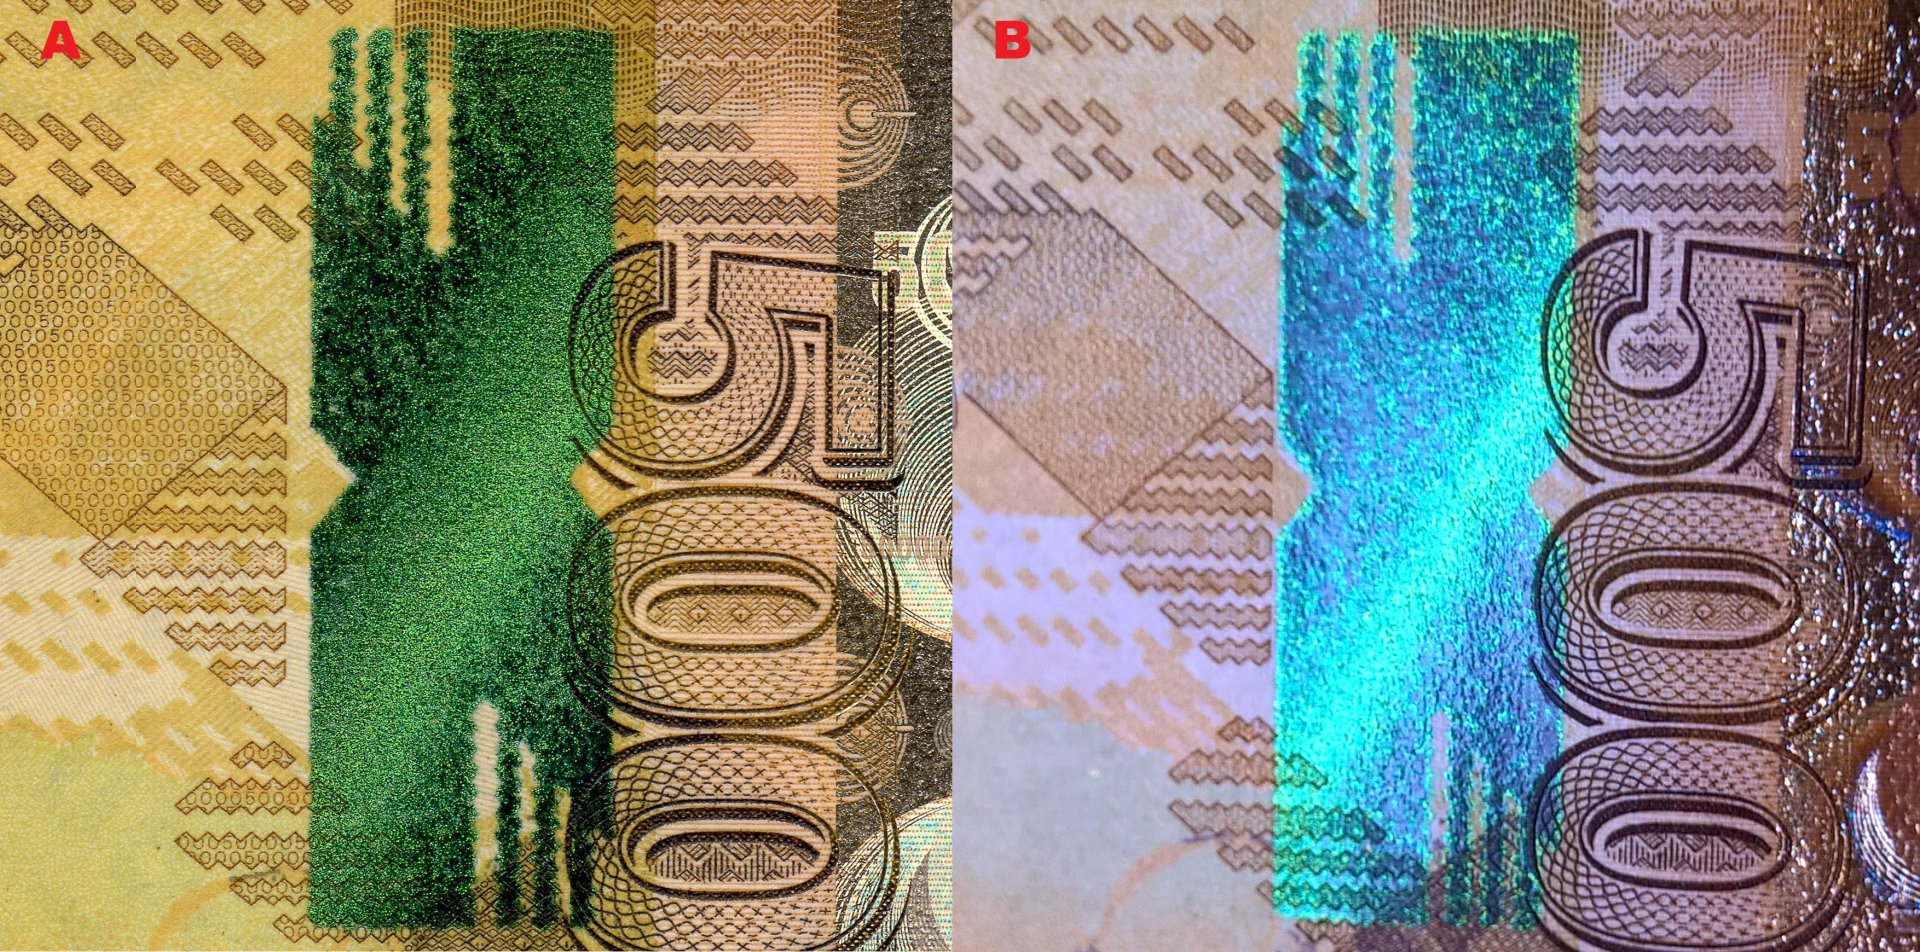 Obrázek 3. A) Pole s technologií MOVI při pohledu kolmo. B) Totéž pole při otáčení bankovky kolem vertikální osy. Změna barvy na modrou a šikmý pruh v pohybu.